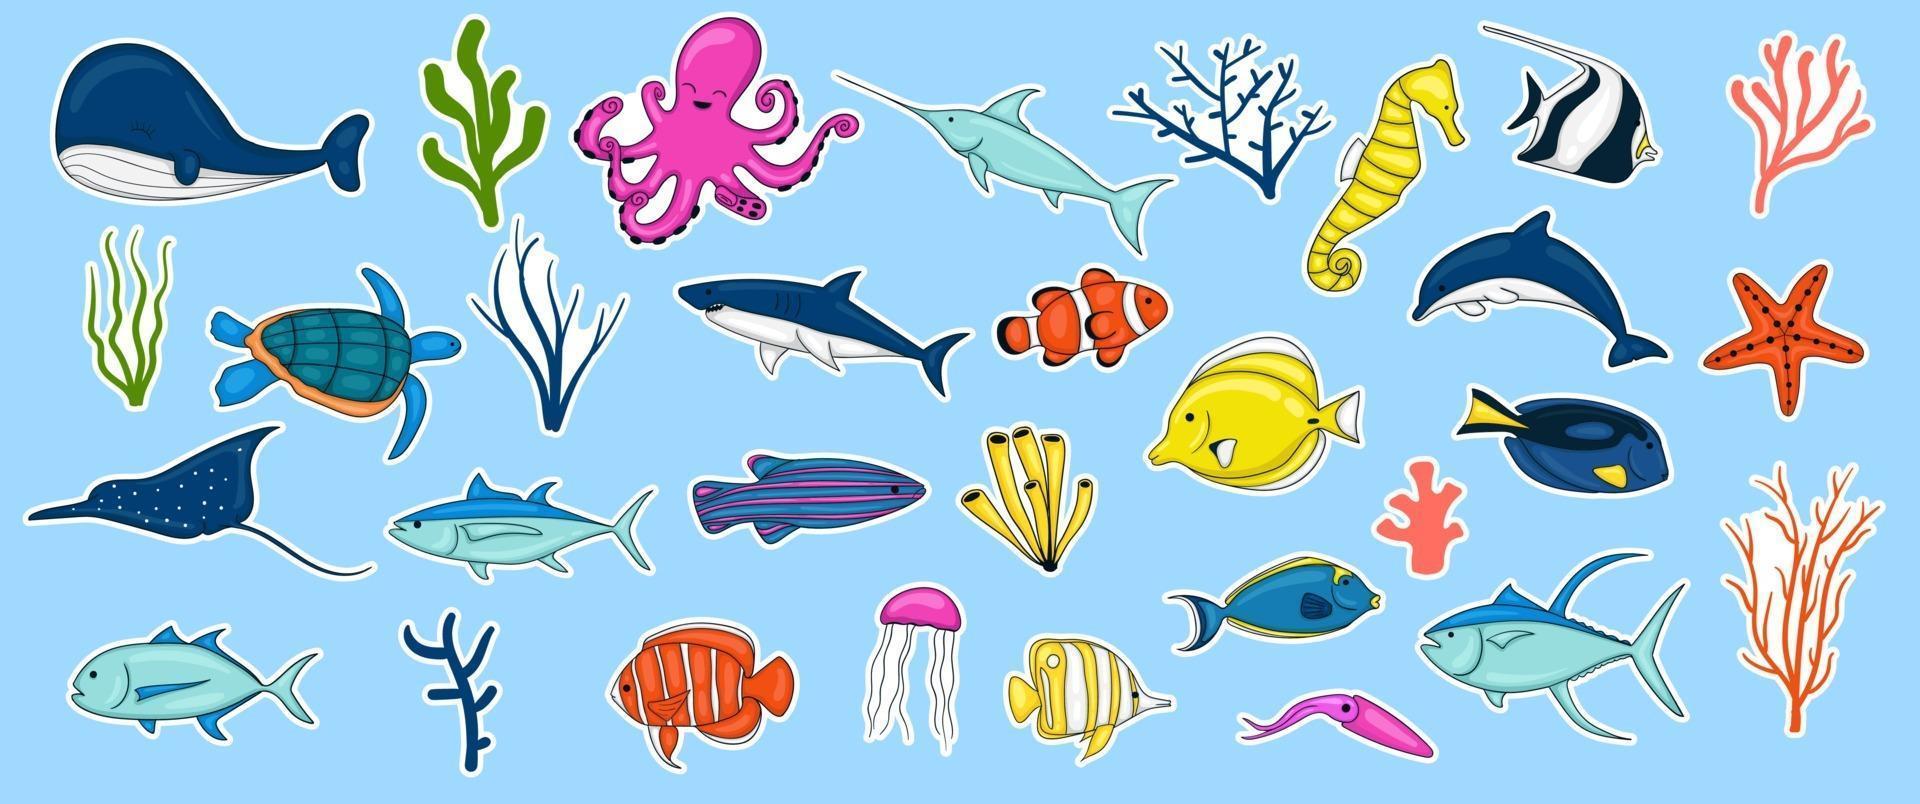 collezione di animali marini disegnati a mano colorati vettore